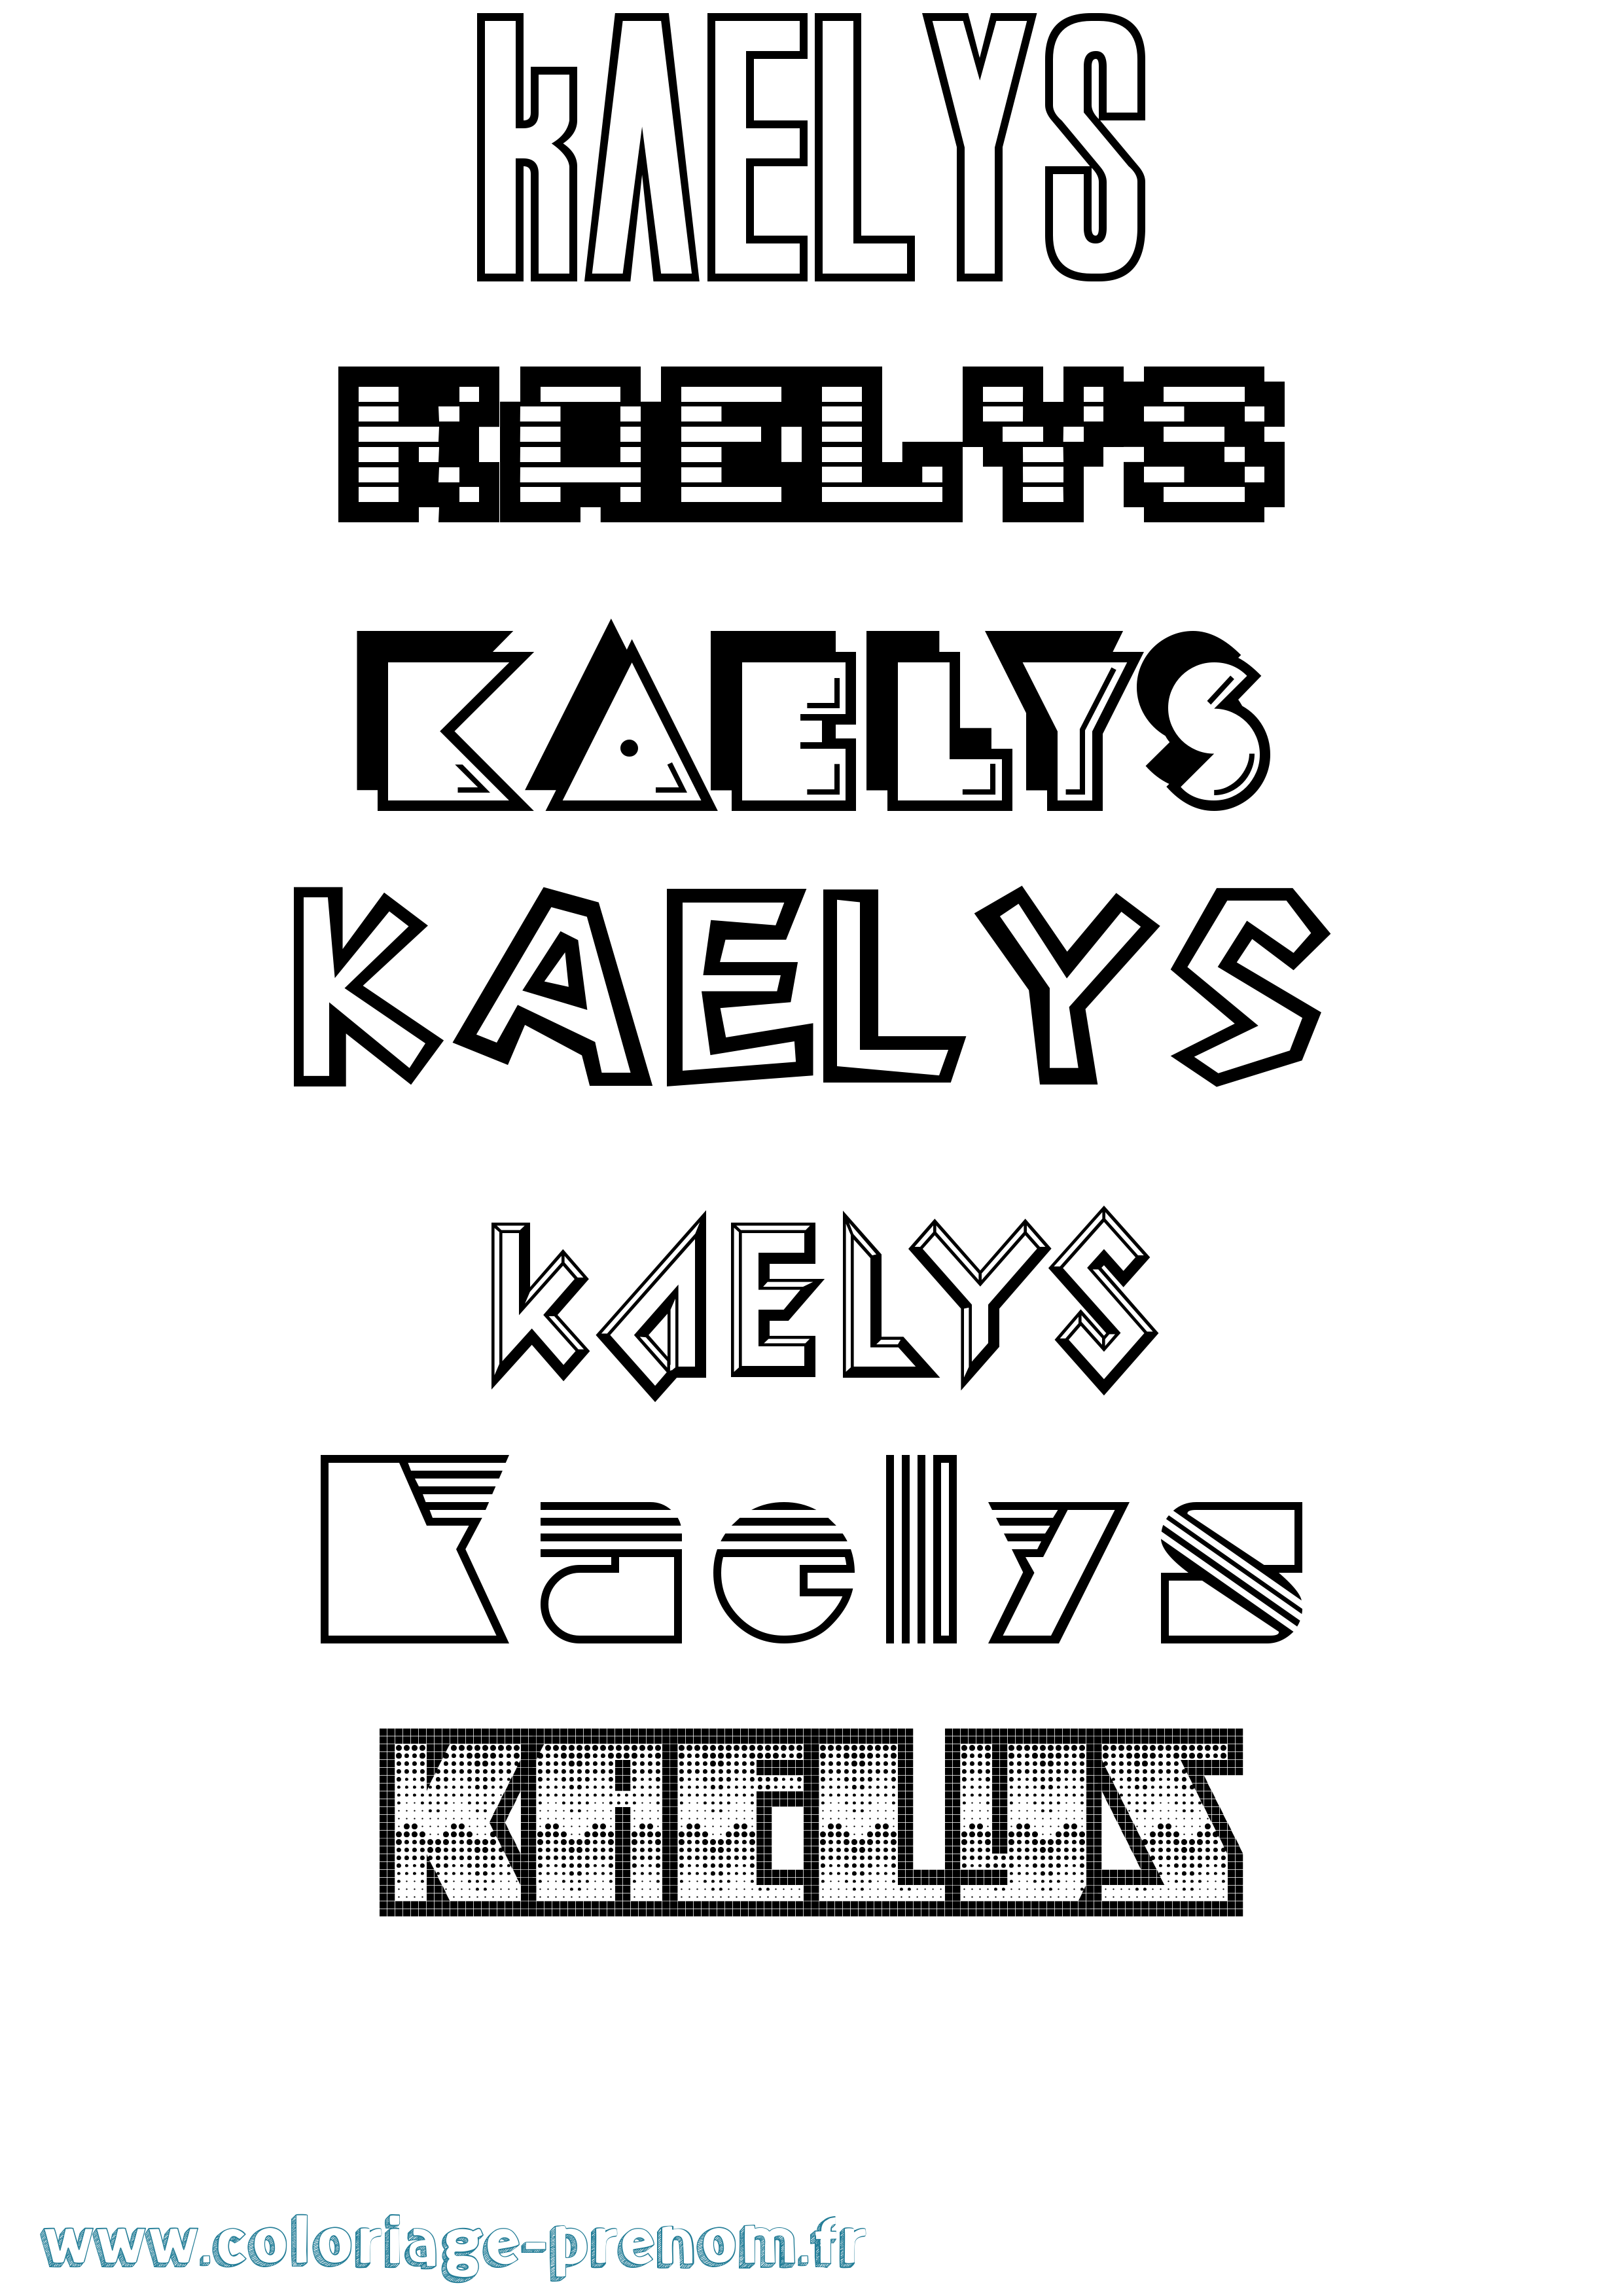 Coloriage prénom Kaelys Jeux Vidéos